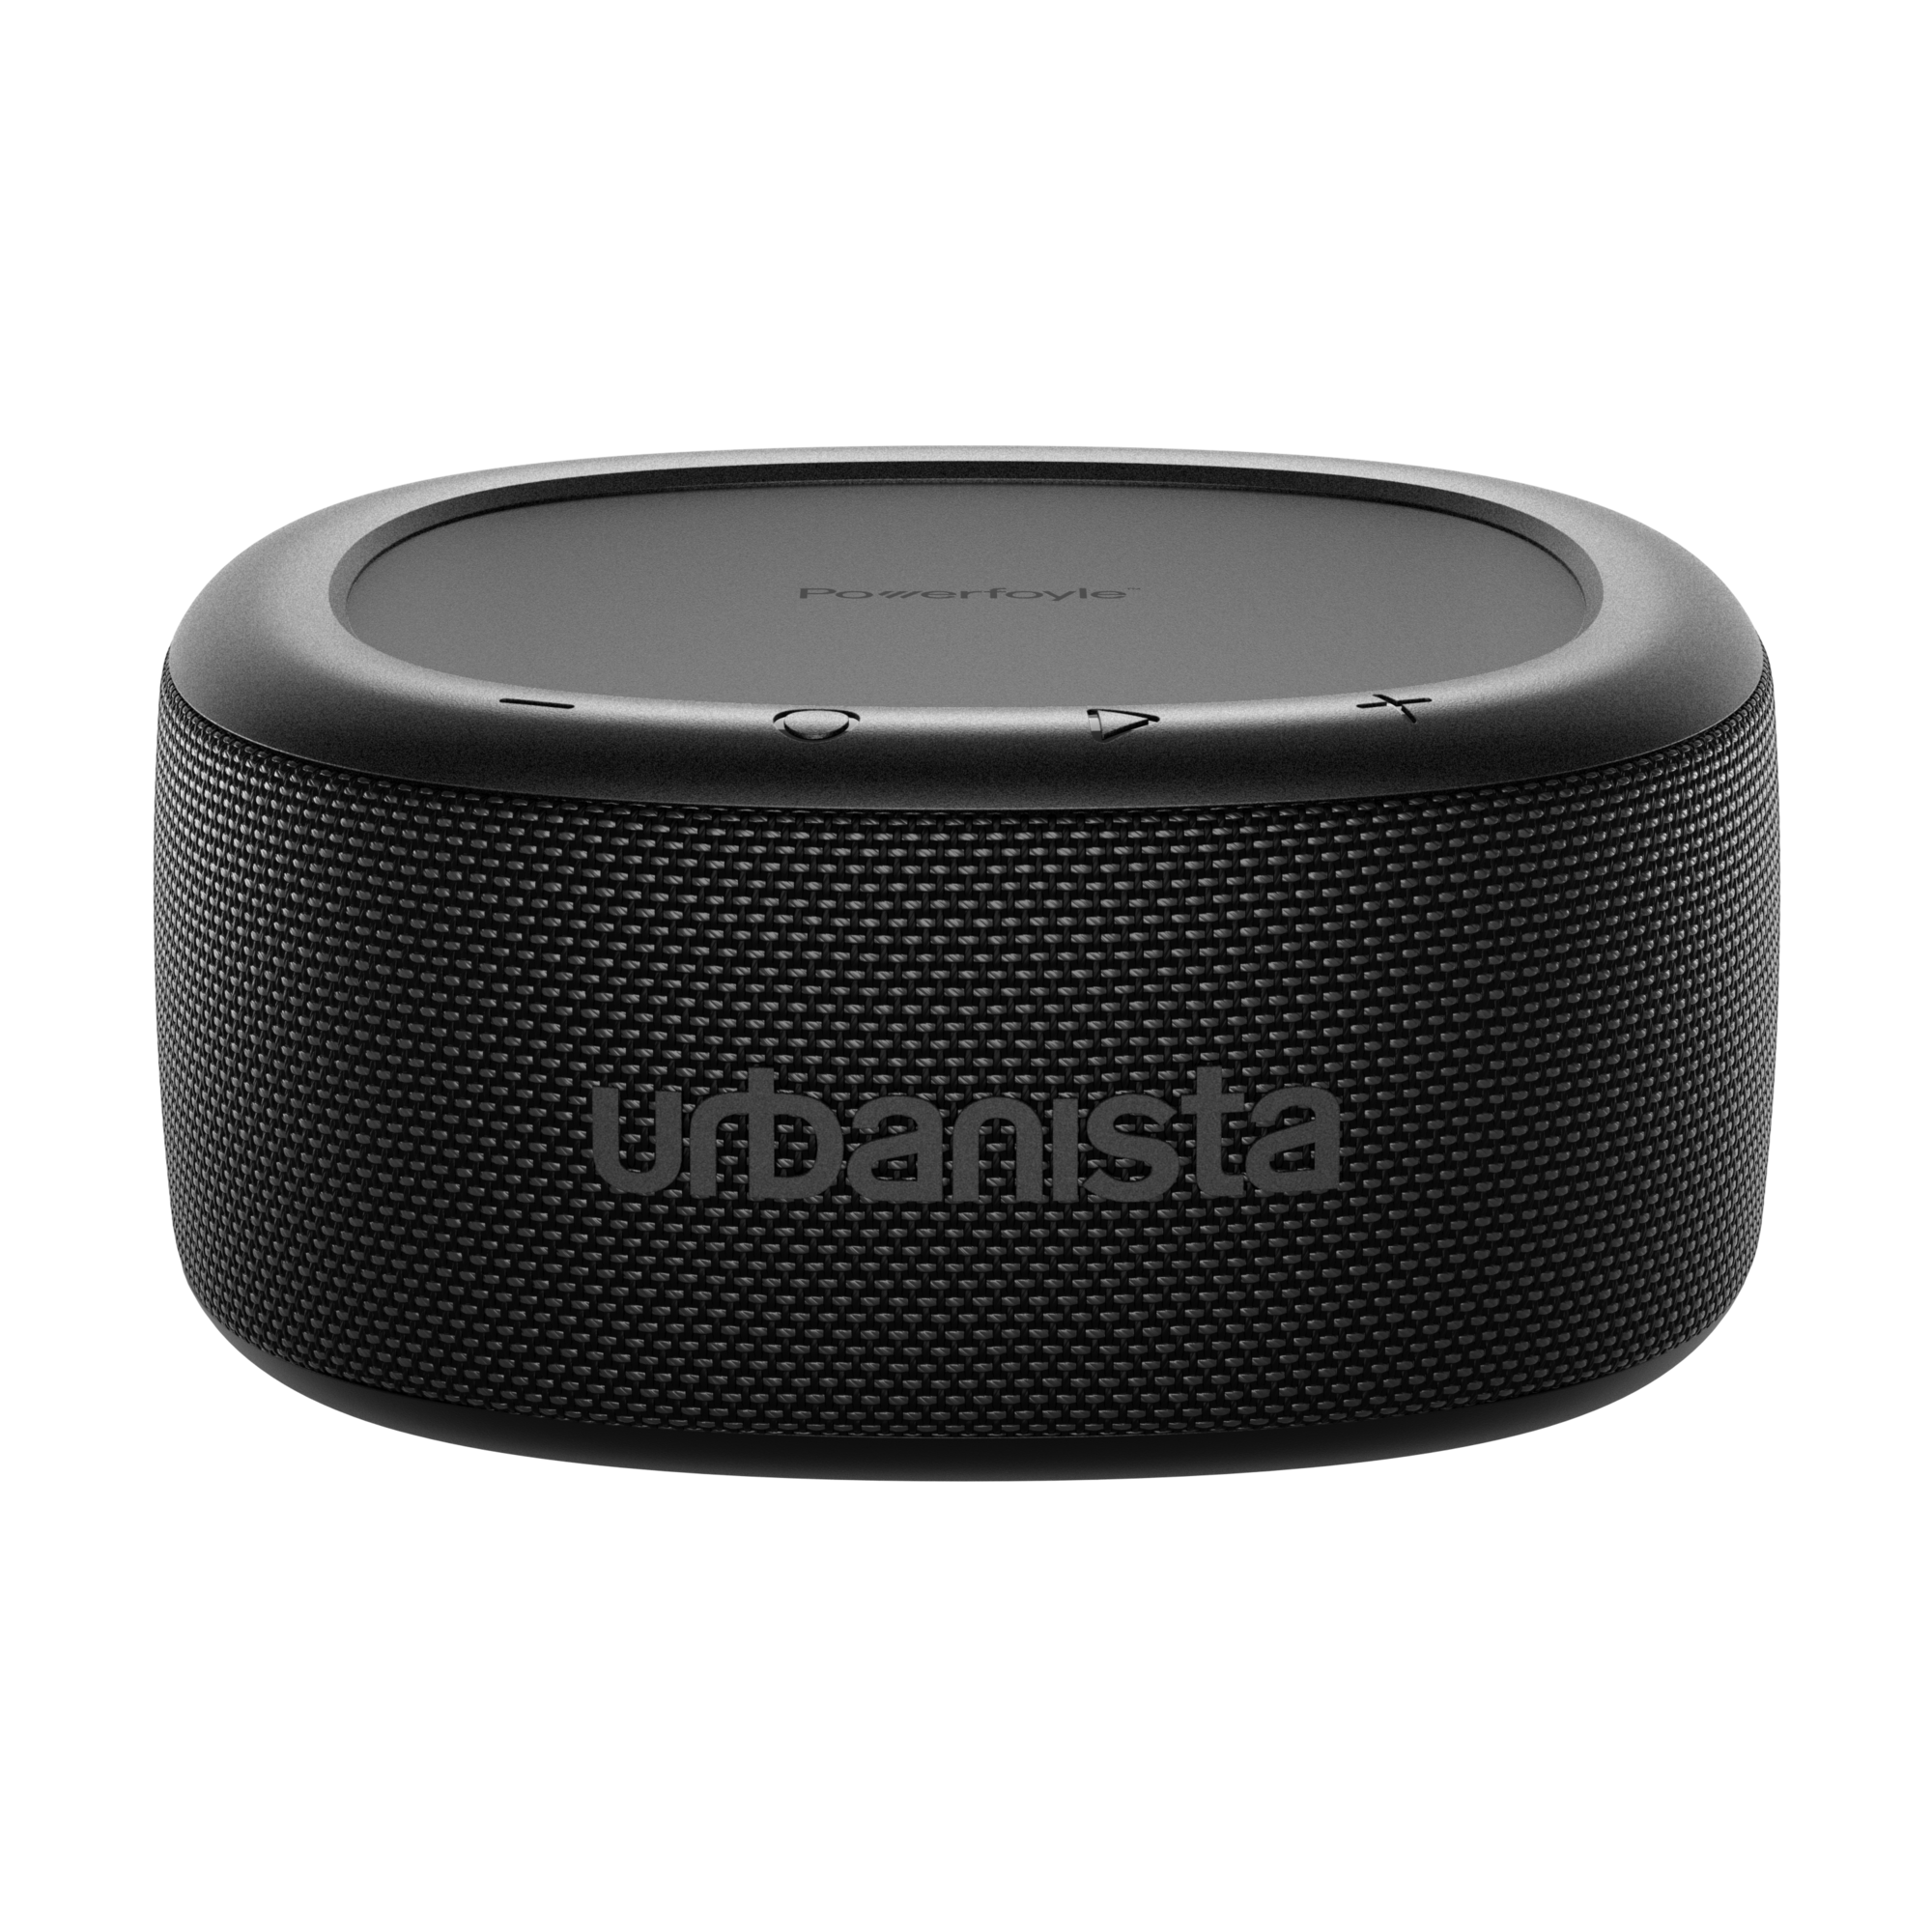 Boxa portabila Urbanista Malibu, True Wireless, incarcare solara/USB-C, 20W, Bluetooth 5.2, IP67, negru